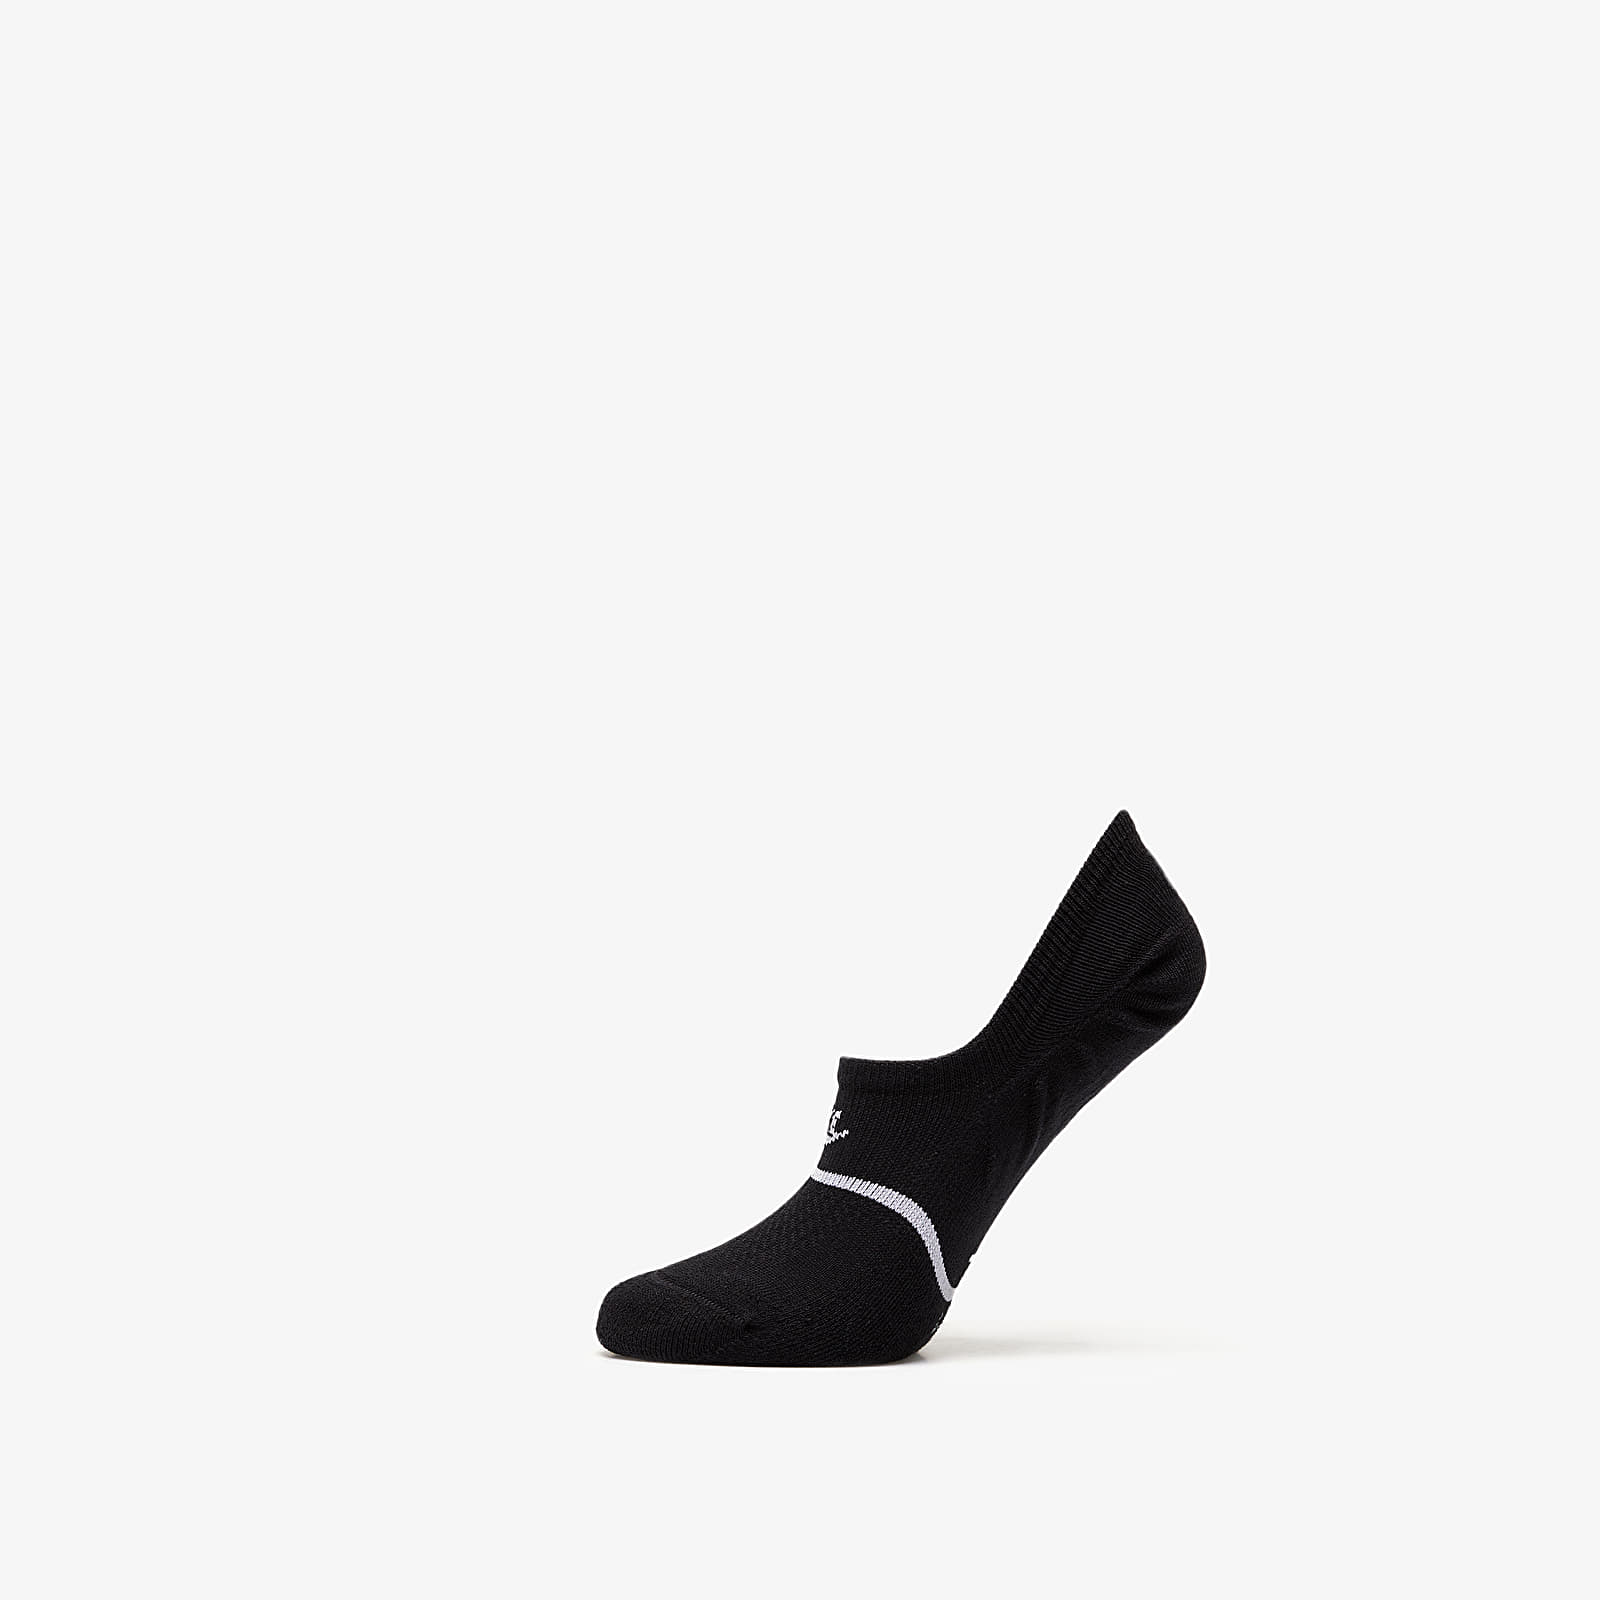 Skarpetki Nike Sneaker Sox Essential No Show Footie 2-Pack Socks Black/ White